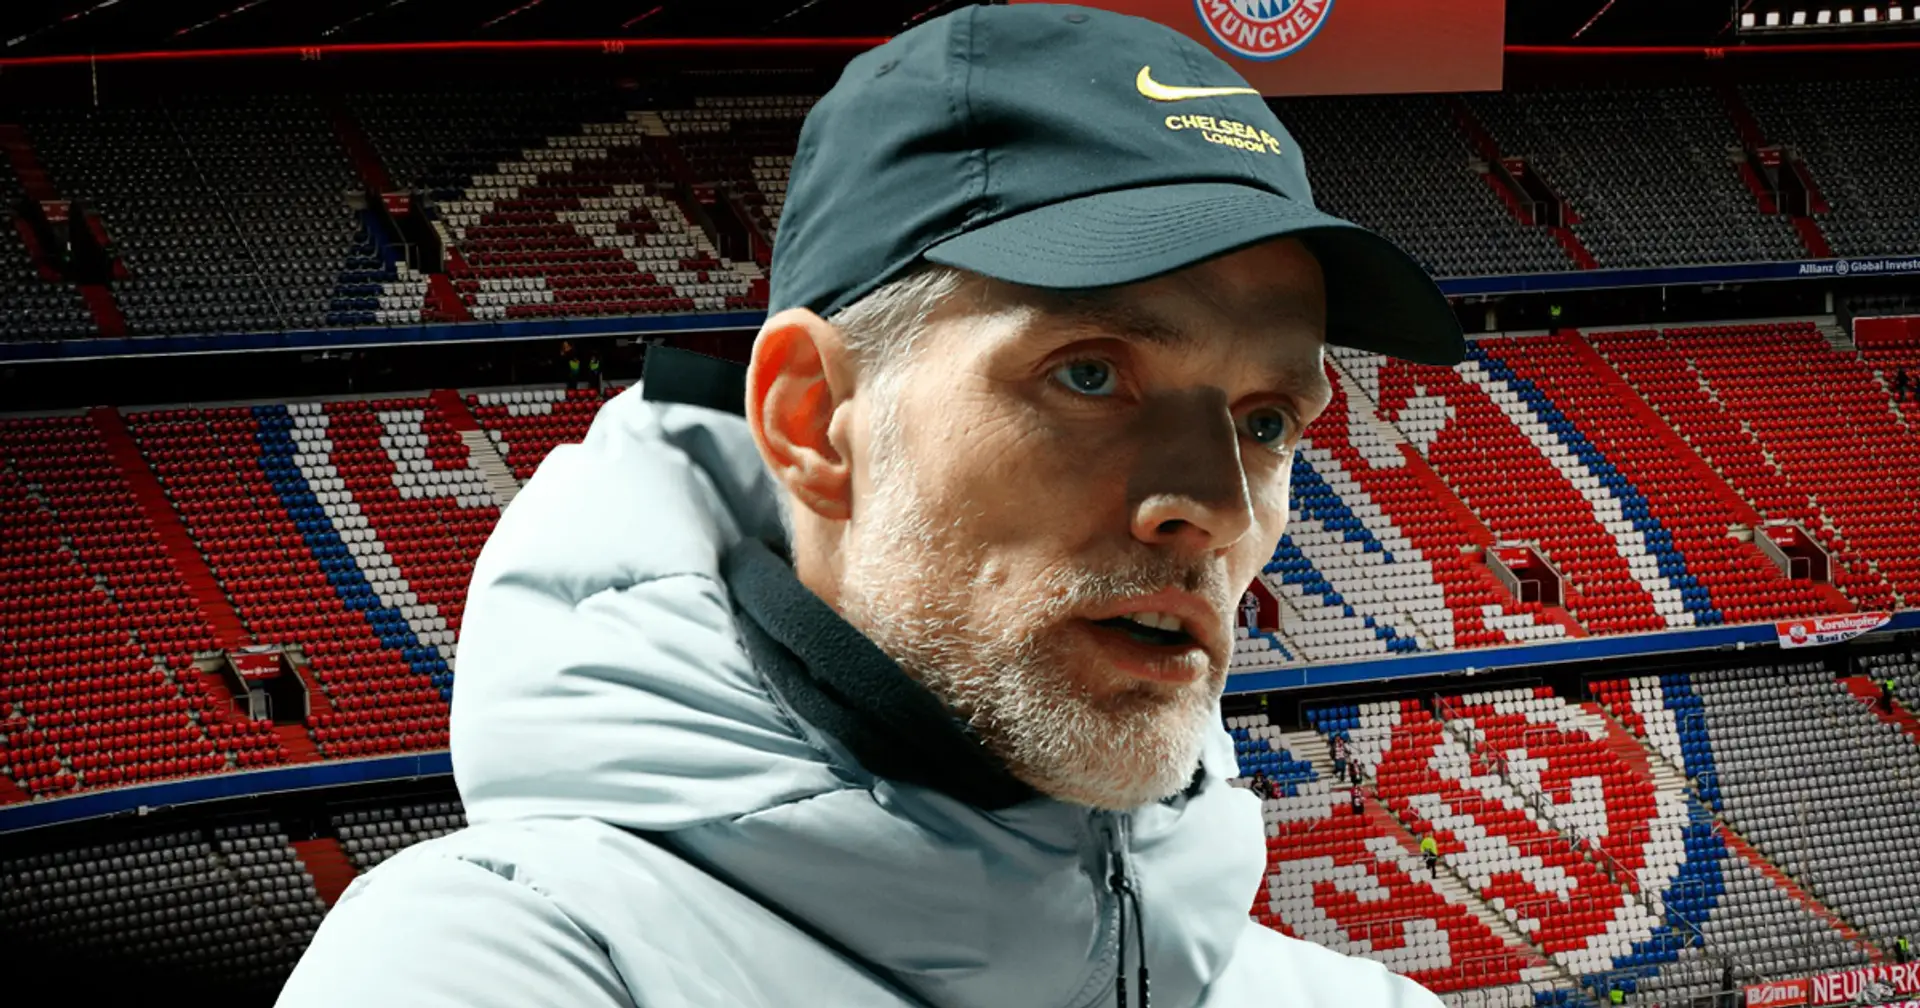 OFFIZIELL: Thomas Tuchel ist der neue Cheftrainer des FC Bayern!